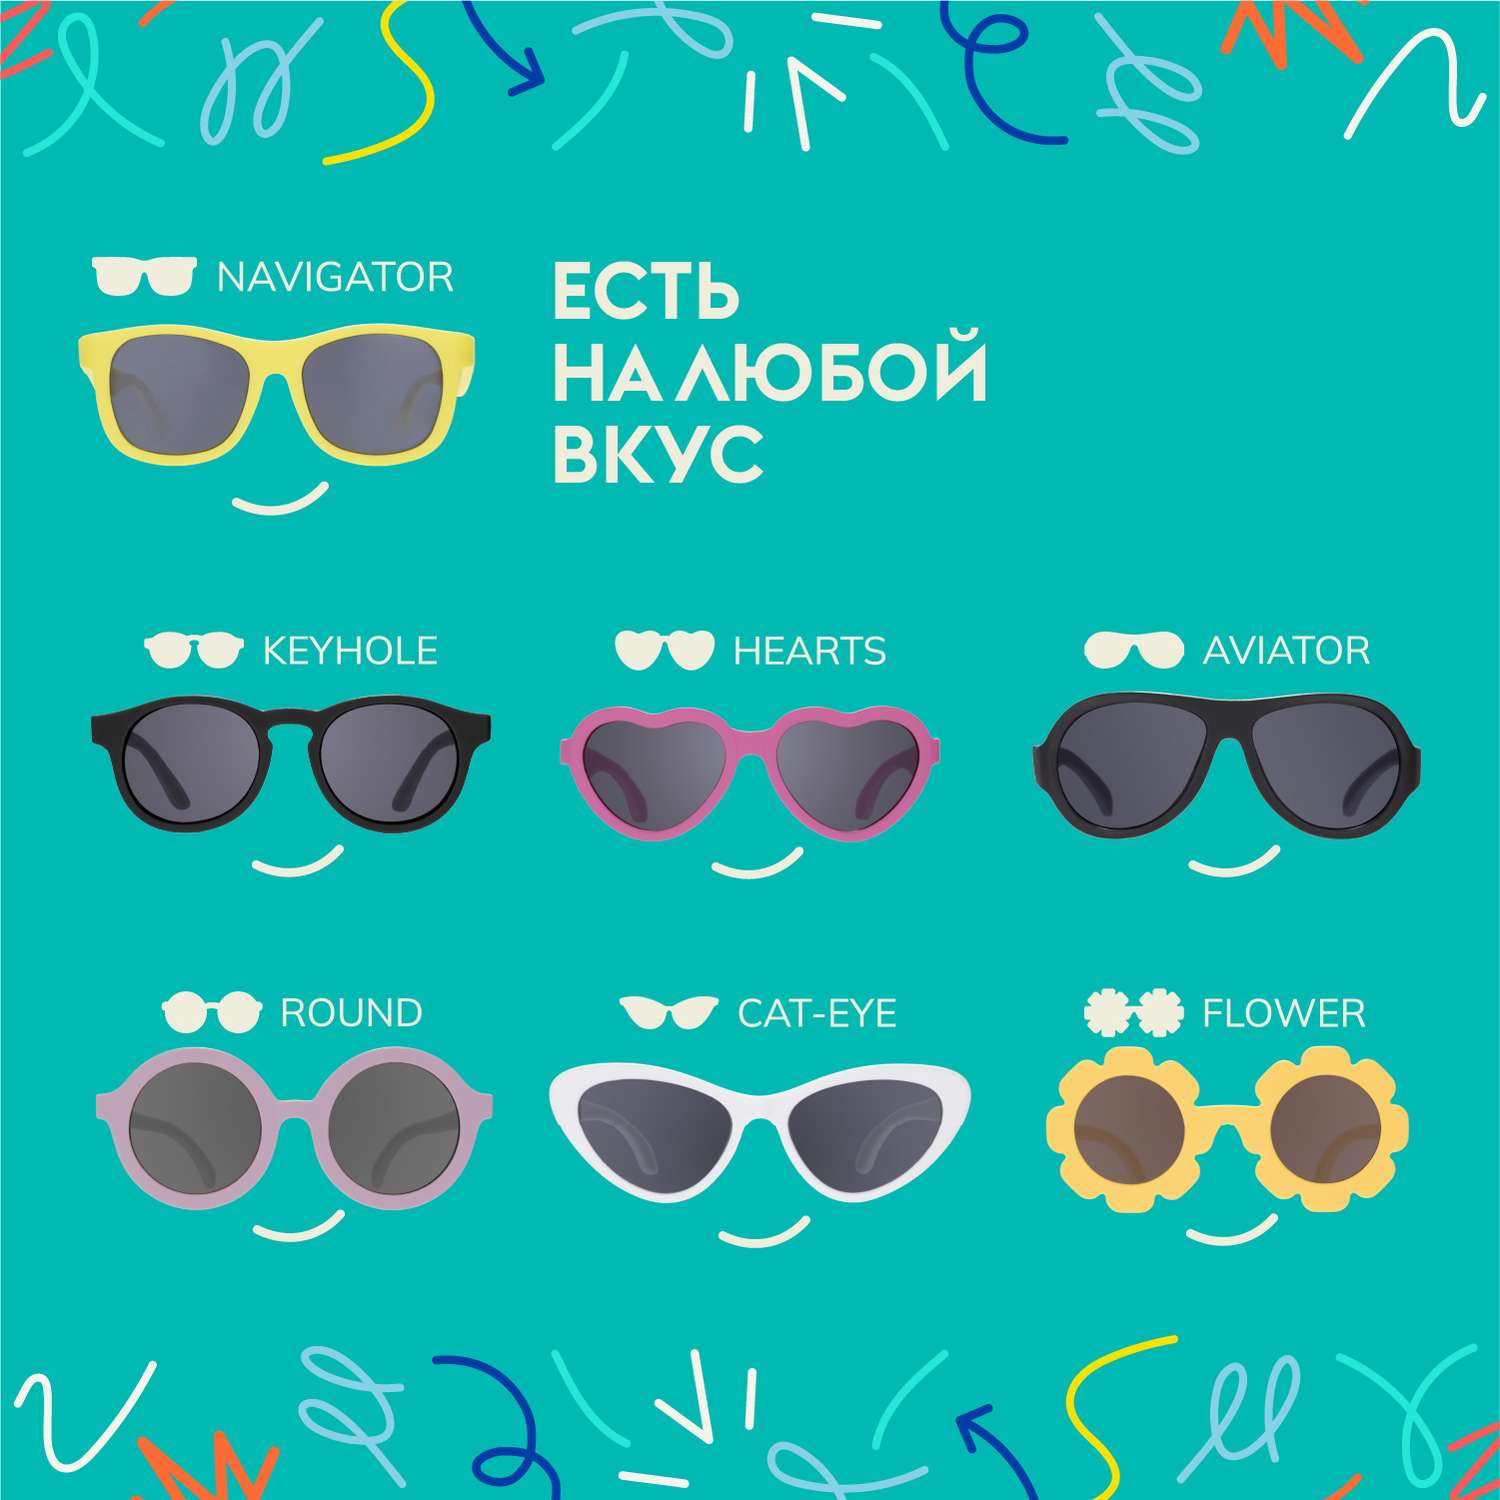 Солнцезащитные очки Babiators Original Cat-Eye Шаловливый белый 3-5 CAT-002 - фото 6